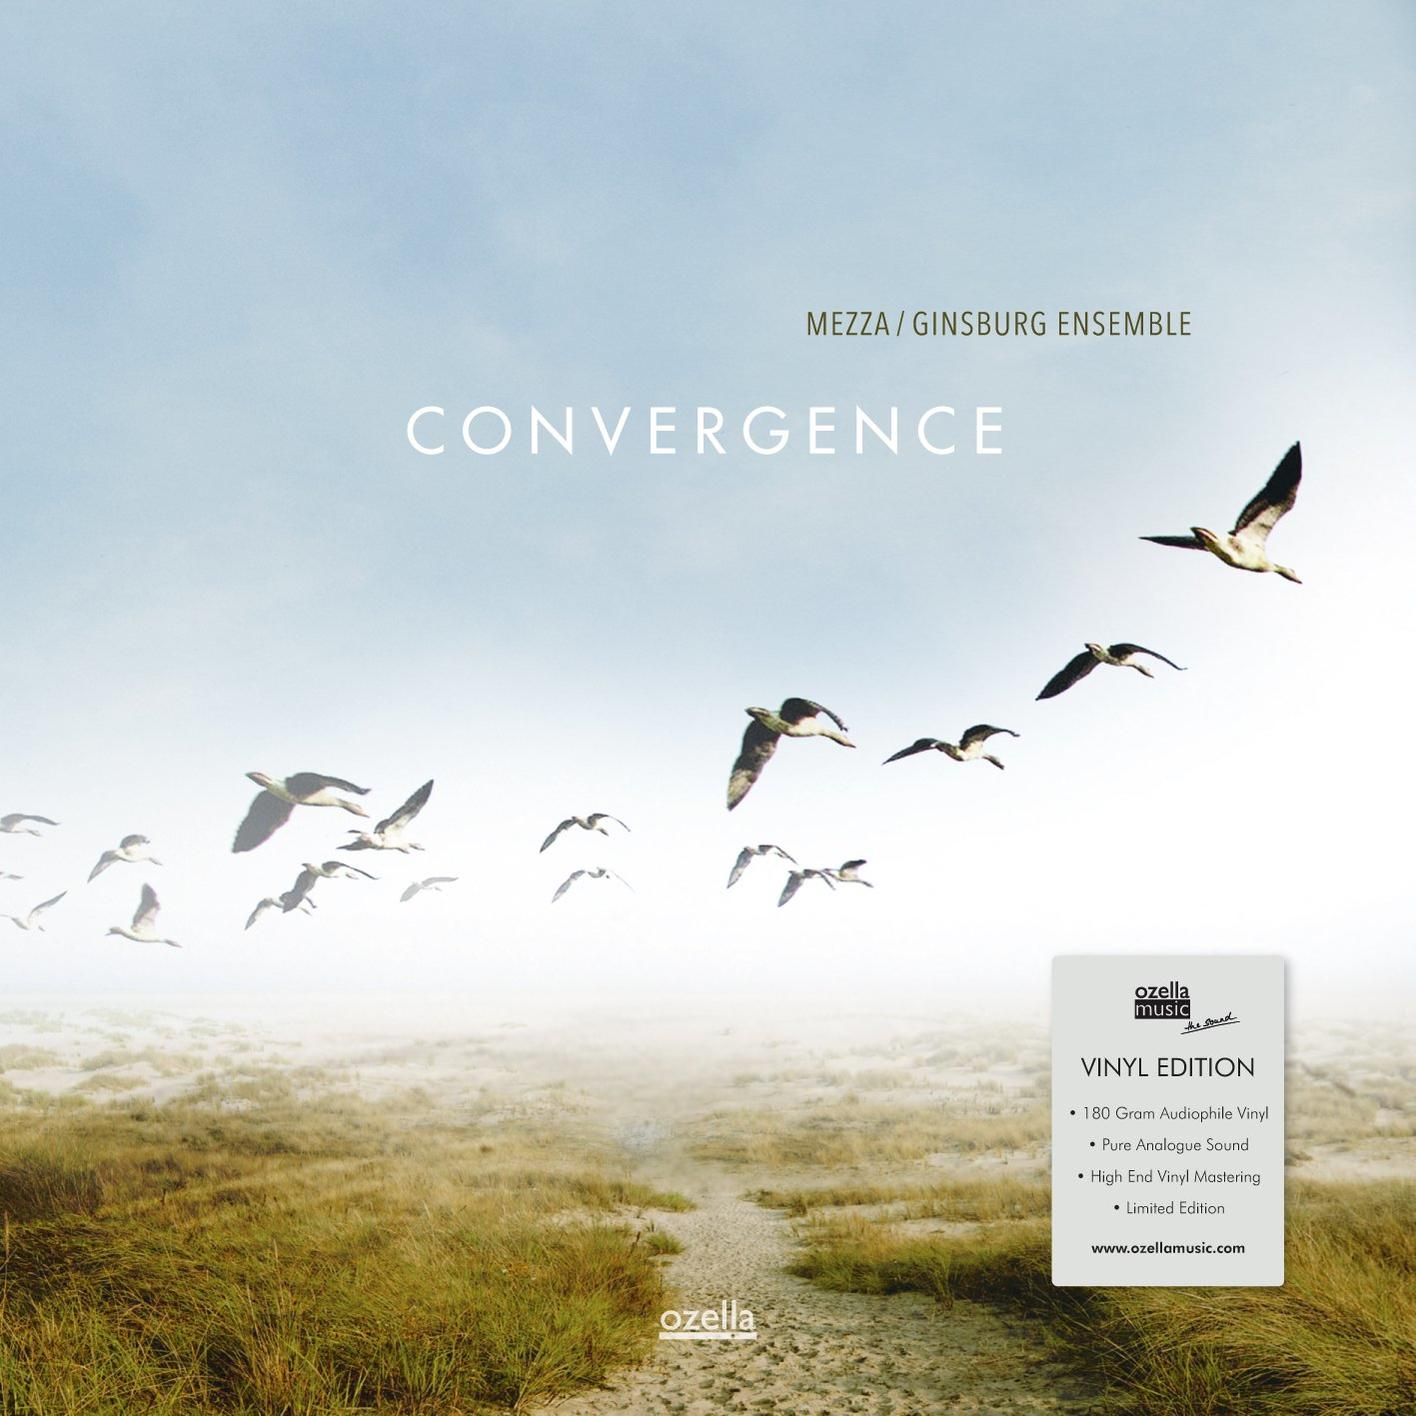 Gramm - Vinyl) - (Vinyl) Ensemble Mezza/Ginsburg Convergence (180